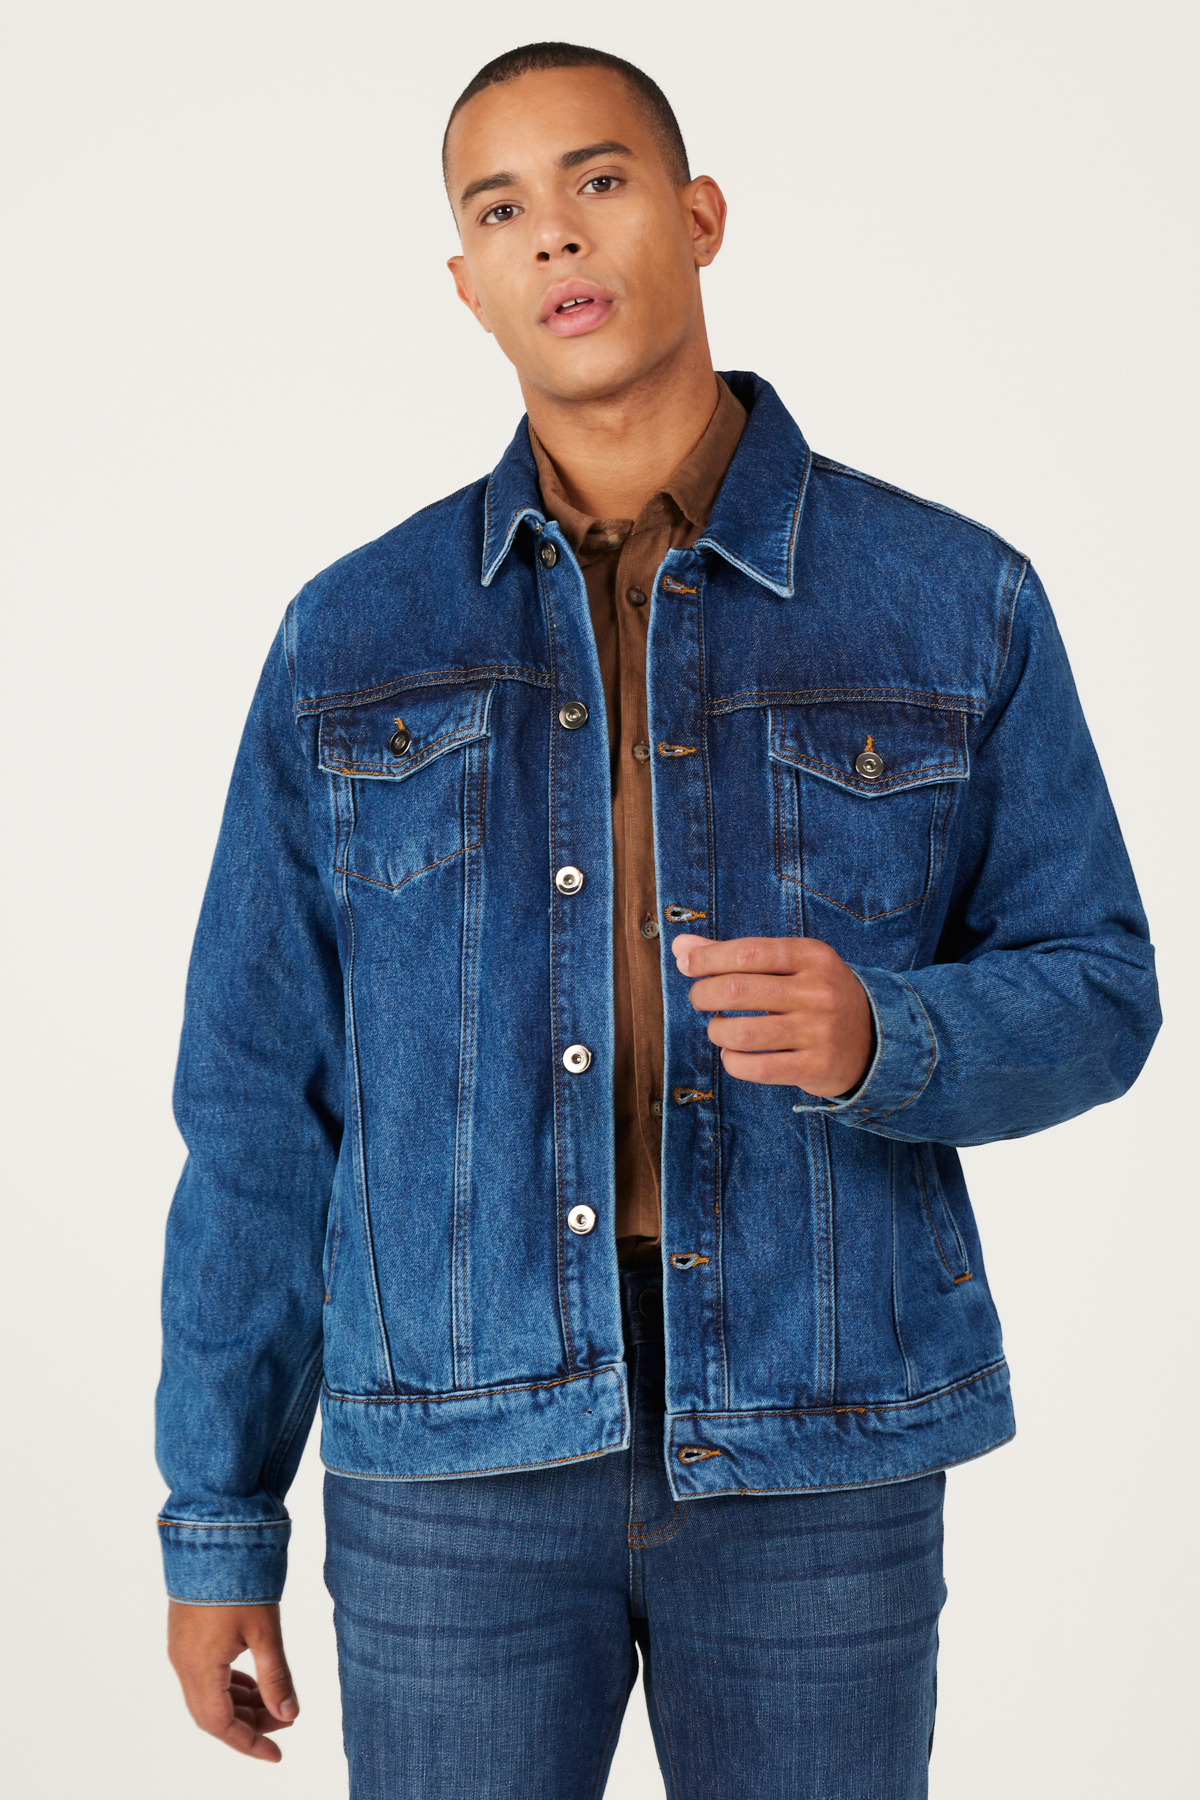 AC&Co / Altınyıldız Classics Men's Navy Blue Standard Fit Regular Cut 100% Cotton Denim Jean Jacket